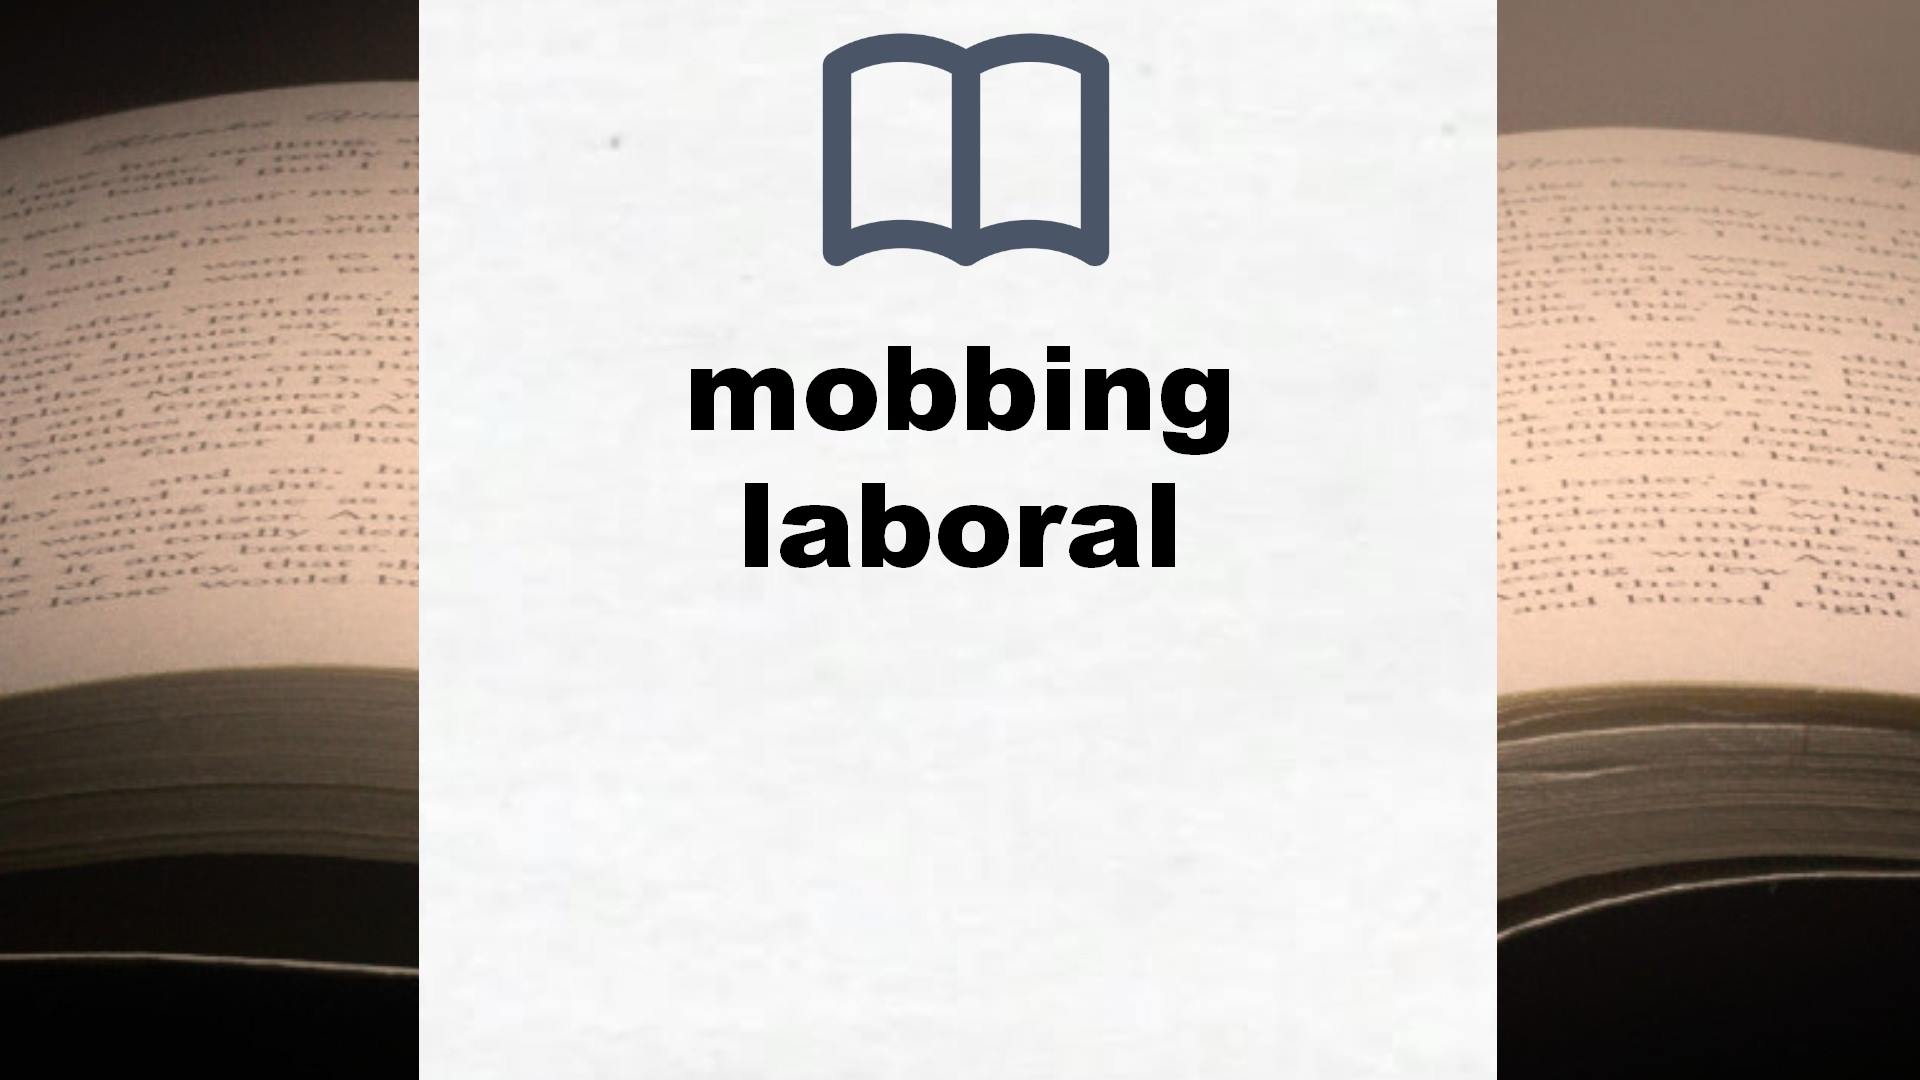 Libros sobre mobbing laboral